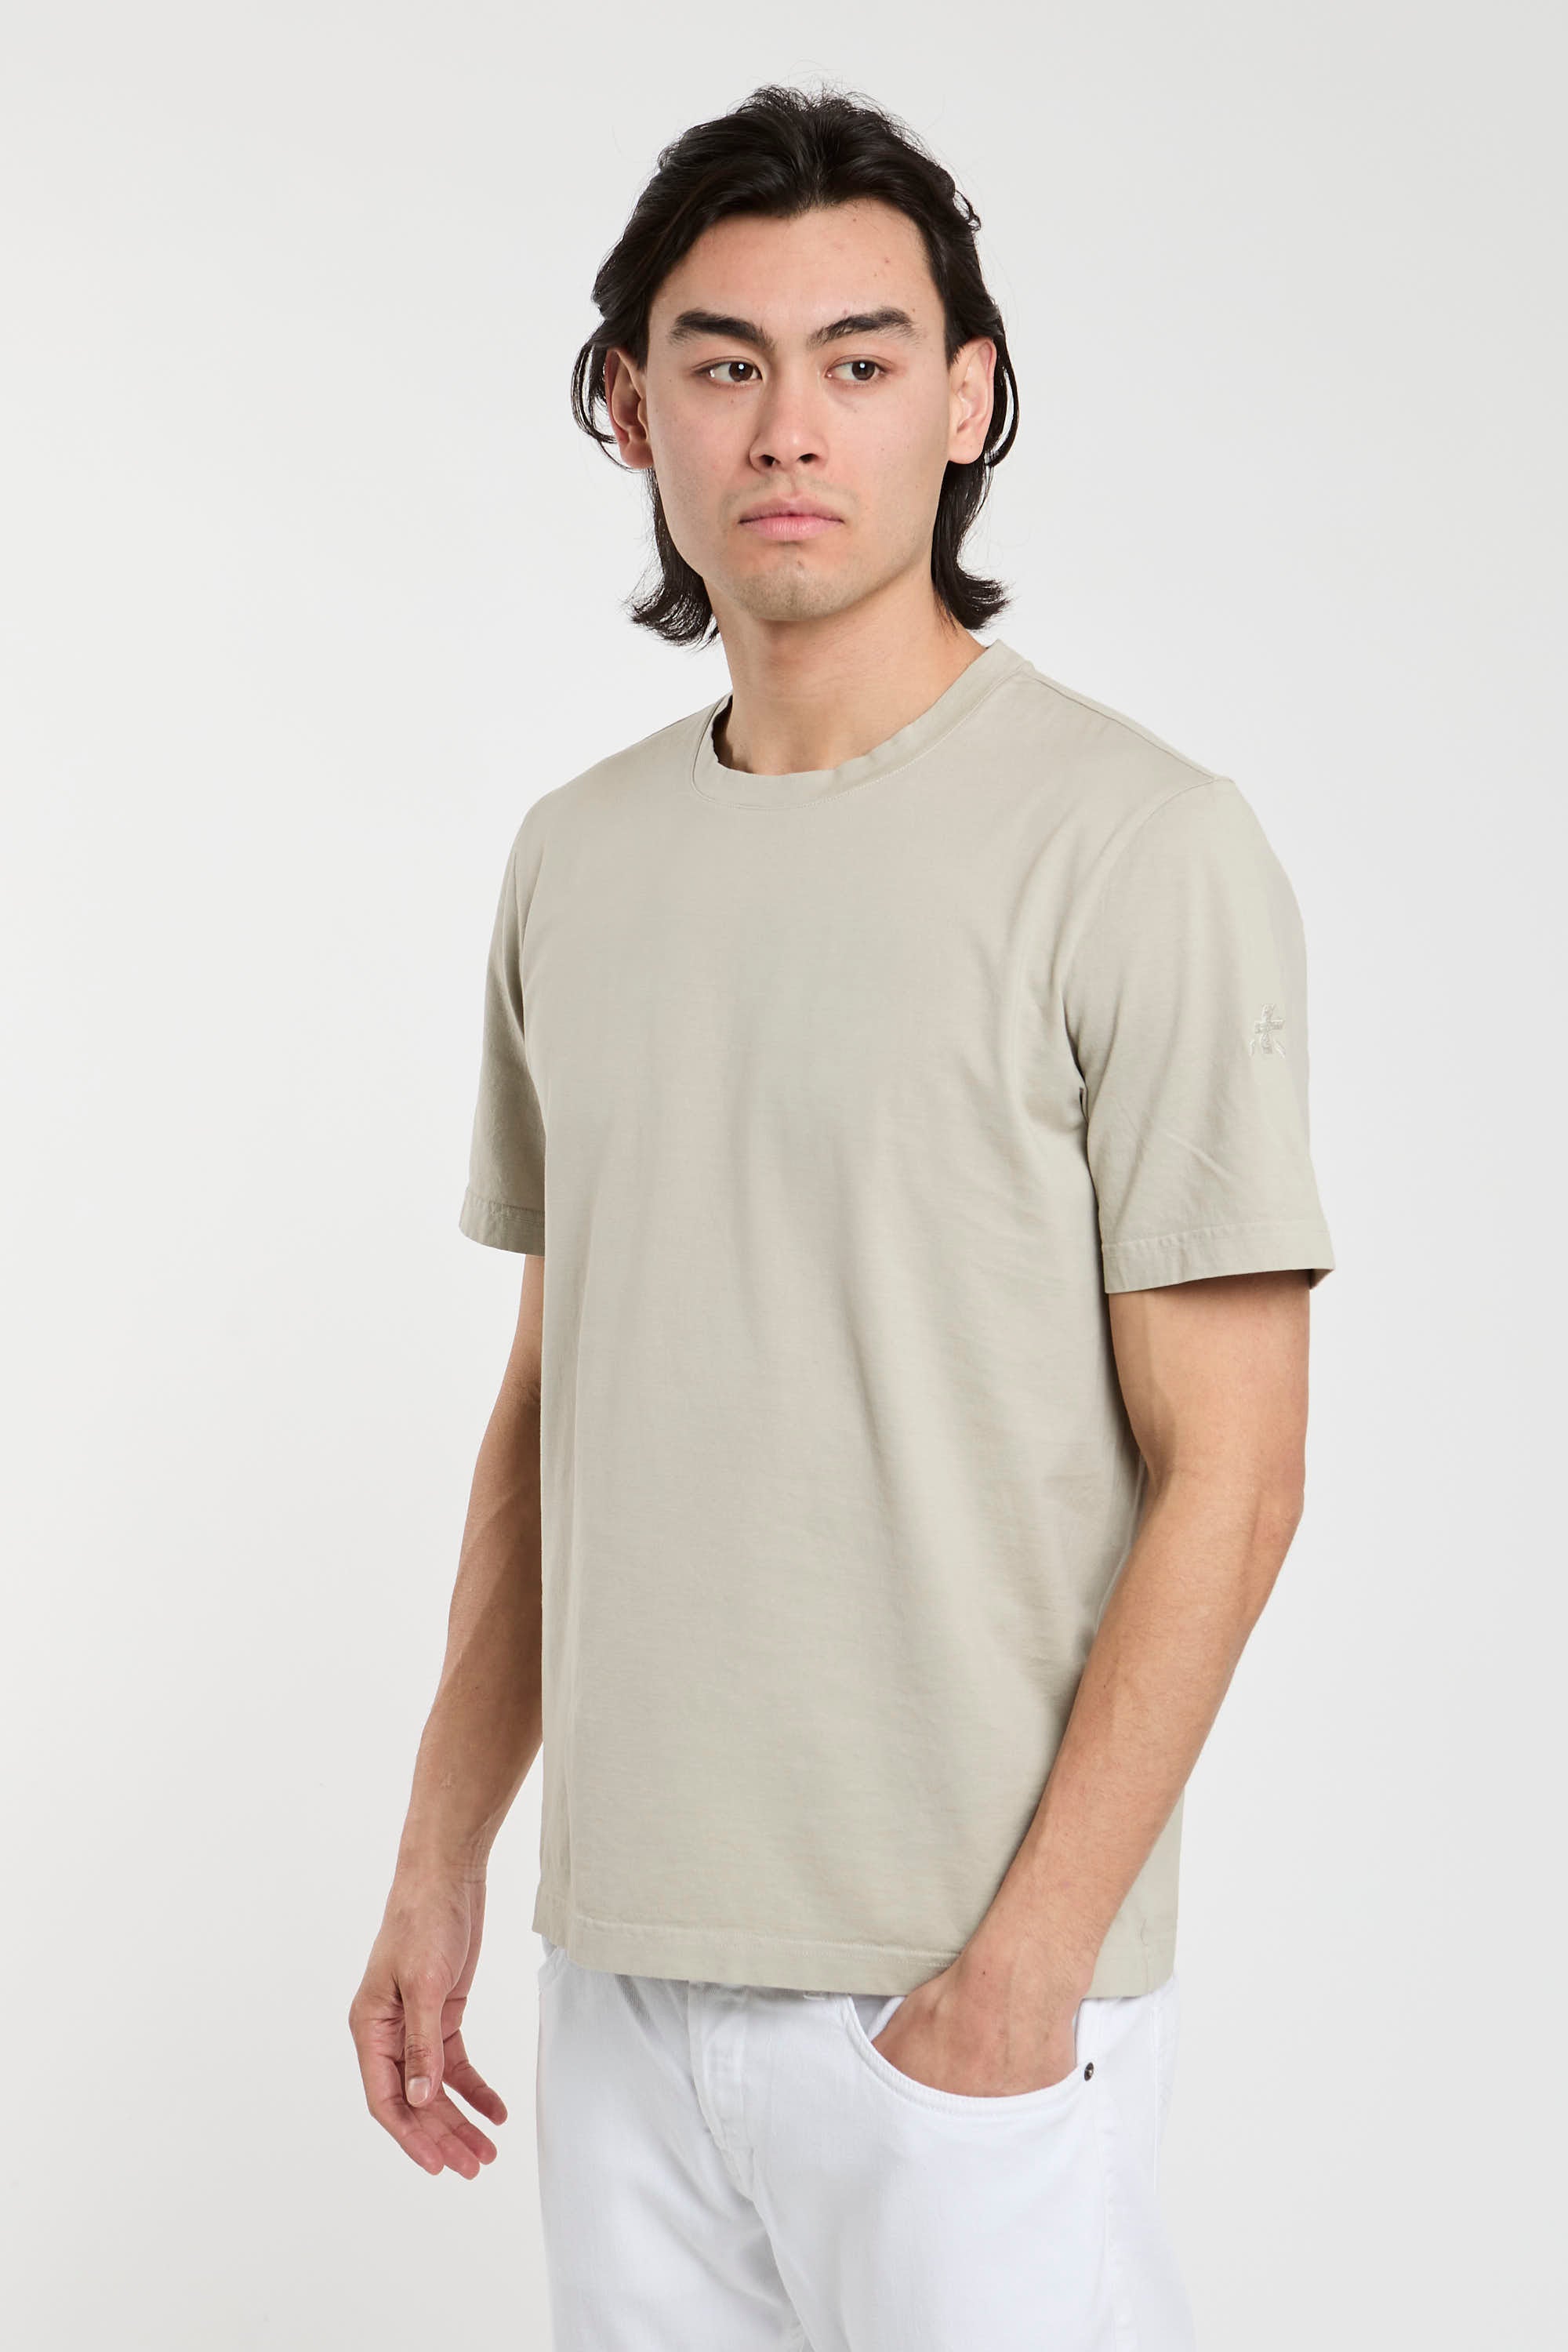 Premiata T-Shirt Jersey aus Baumwolle in Sandfarbe-1